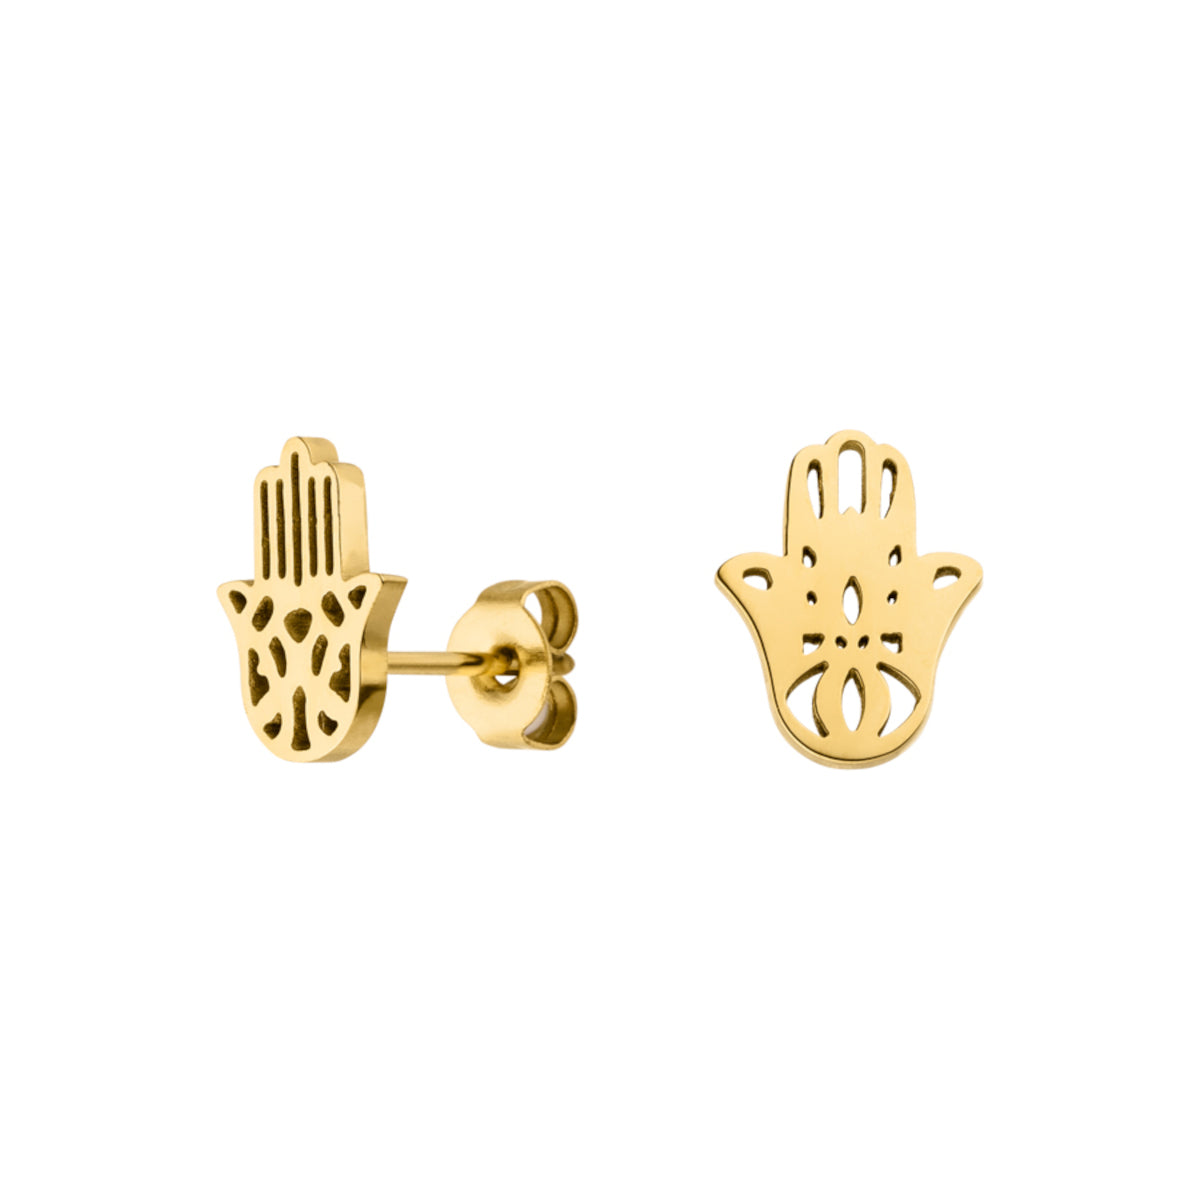 Goldene Ohrringe mit Hamsa Hand Motiv aus Edelstahl von der Marke Luuk Lifestyle